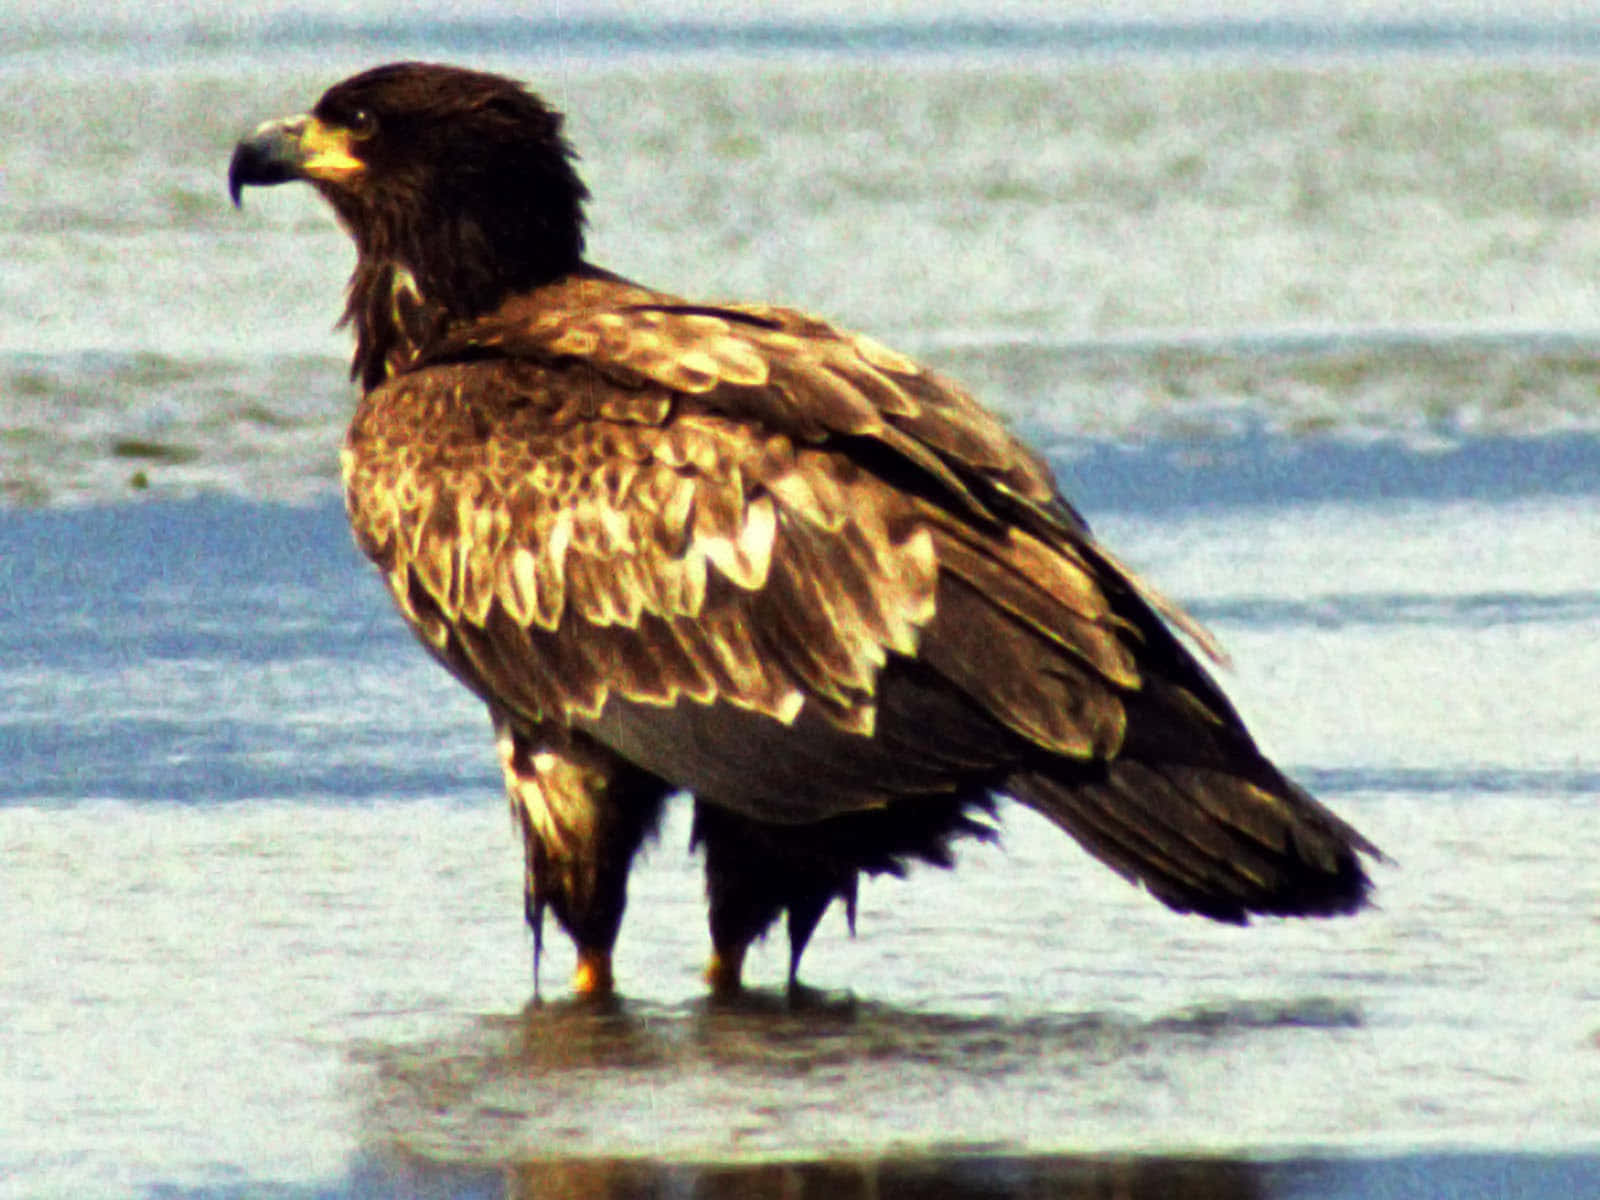 Ungiovane Aquila Calva Si Prepara A Prendere Il Volo Nel Suo Habitat Naturale